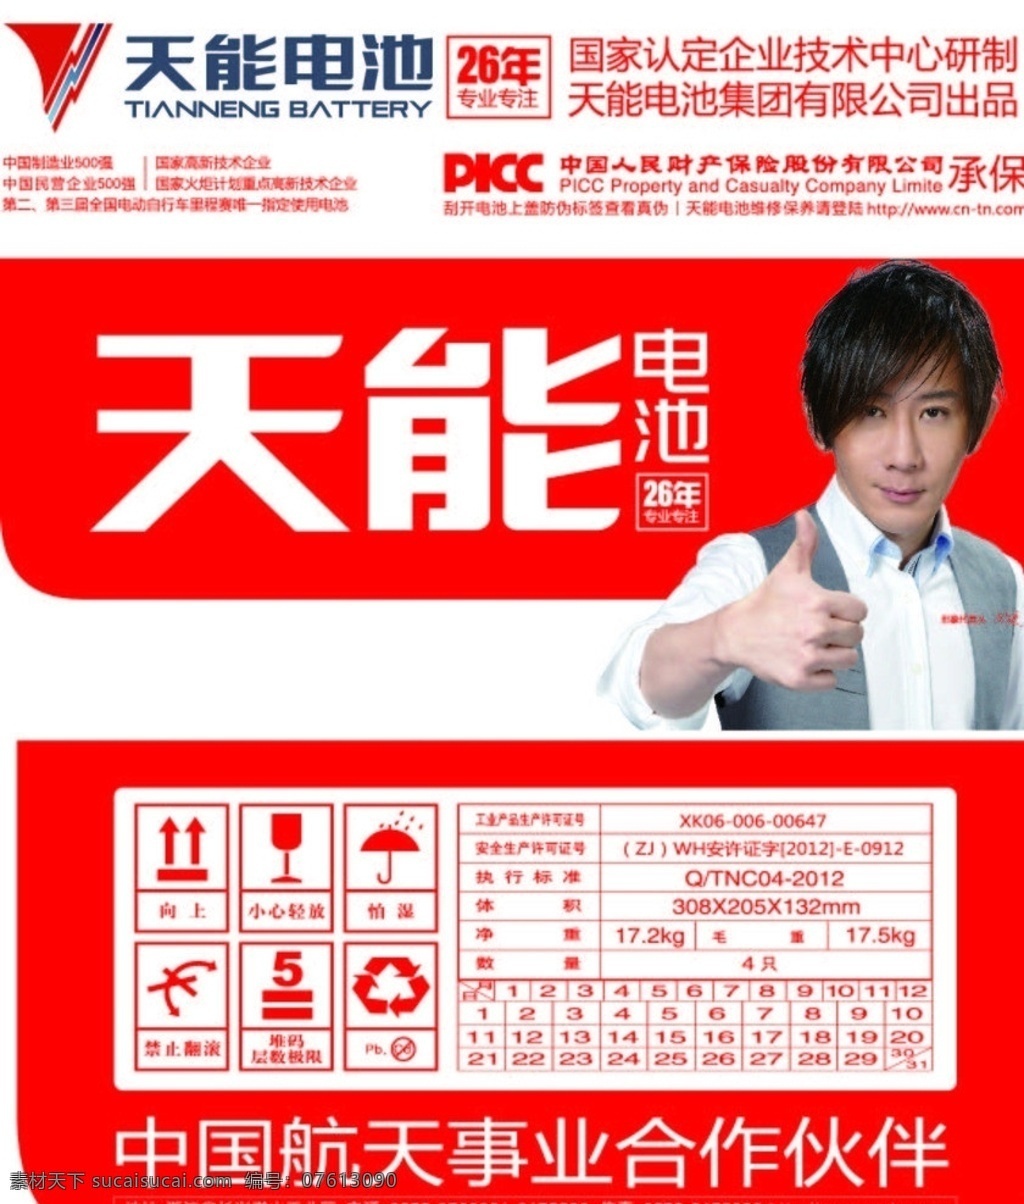 天能电池 刘谦 矢量图 电池 picc 中国航天 事业 合作伙伴 生活用品 生活百科 矢量